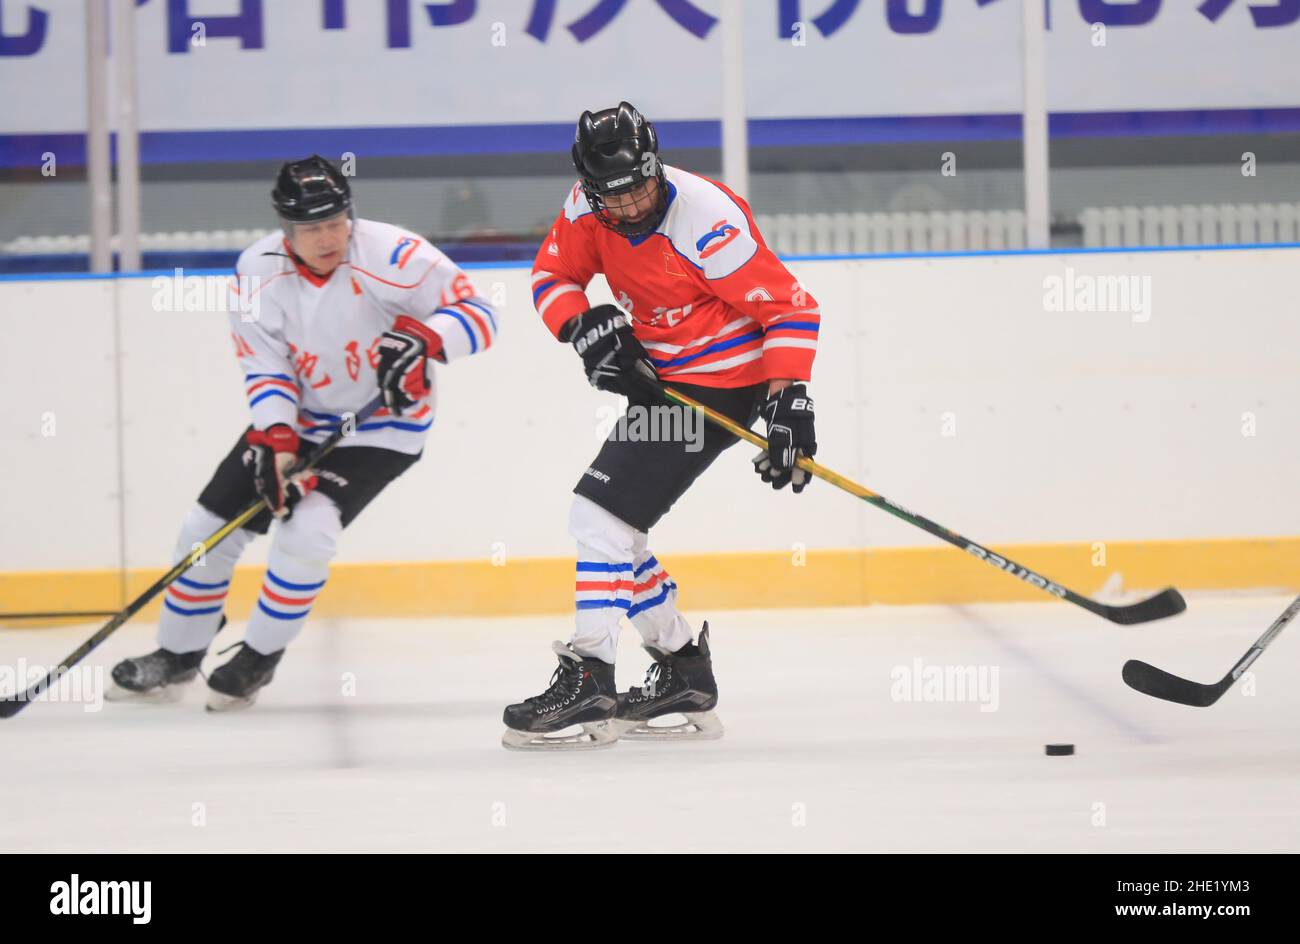 (220108) -- SHENYANG, 8. Januar 2022 (Xinhua) -- Ryan (R) spielt Eishockey mit Freunden in Shenyang, nordöstlich der Provinz Liaoning, 6. Januar 2022. Ryan ist ein 38-jähriger Kanadier, der in Shenyang lebt. Ryan kam 2013 zum ersten Mal nach China und arbeitet nun als Ingenieur bei einem Unternehmen in Shenyang. Ryan ist ein begeisterter Wintersportler, vor allem Eishockey. Durch das wöchentliche Eishockey-Training hat sich Ryan mit vielen lokalen Eishockey-Liebhabern angefreundet. Während sich die Olympischen Spiele 2022 in Peking nähern, freut sich Ryan auf eine großartige Leistung aller Athleten. Er wünscht dem Pekinger WI Stockfoto